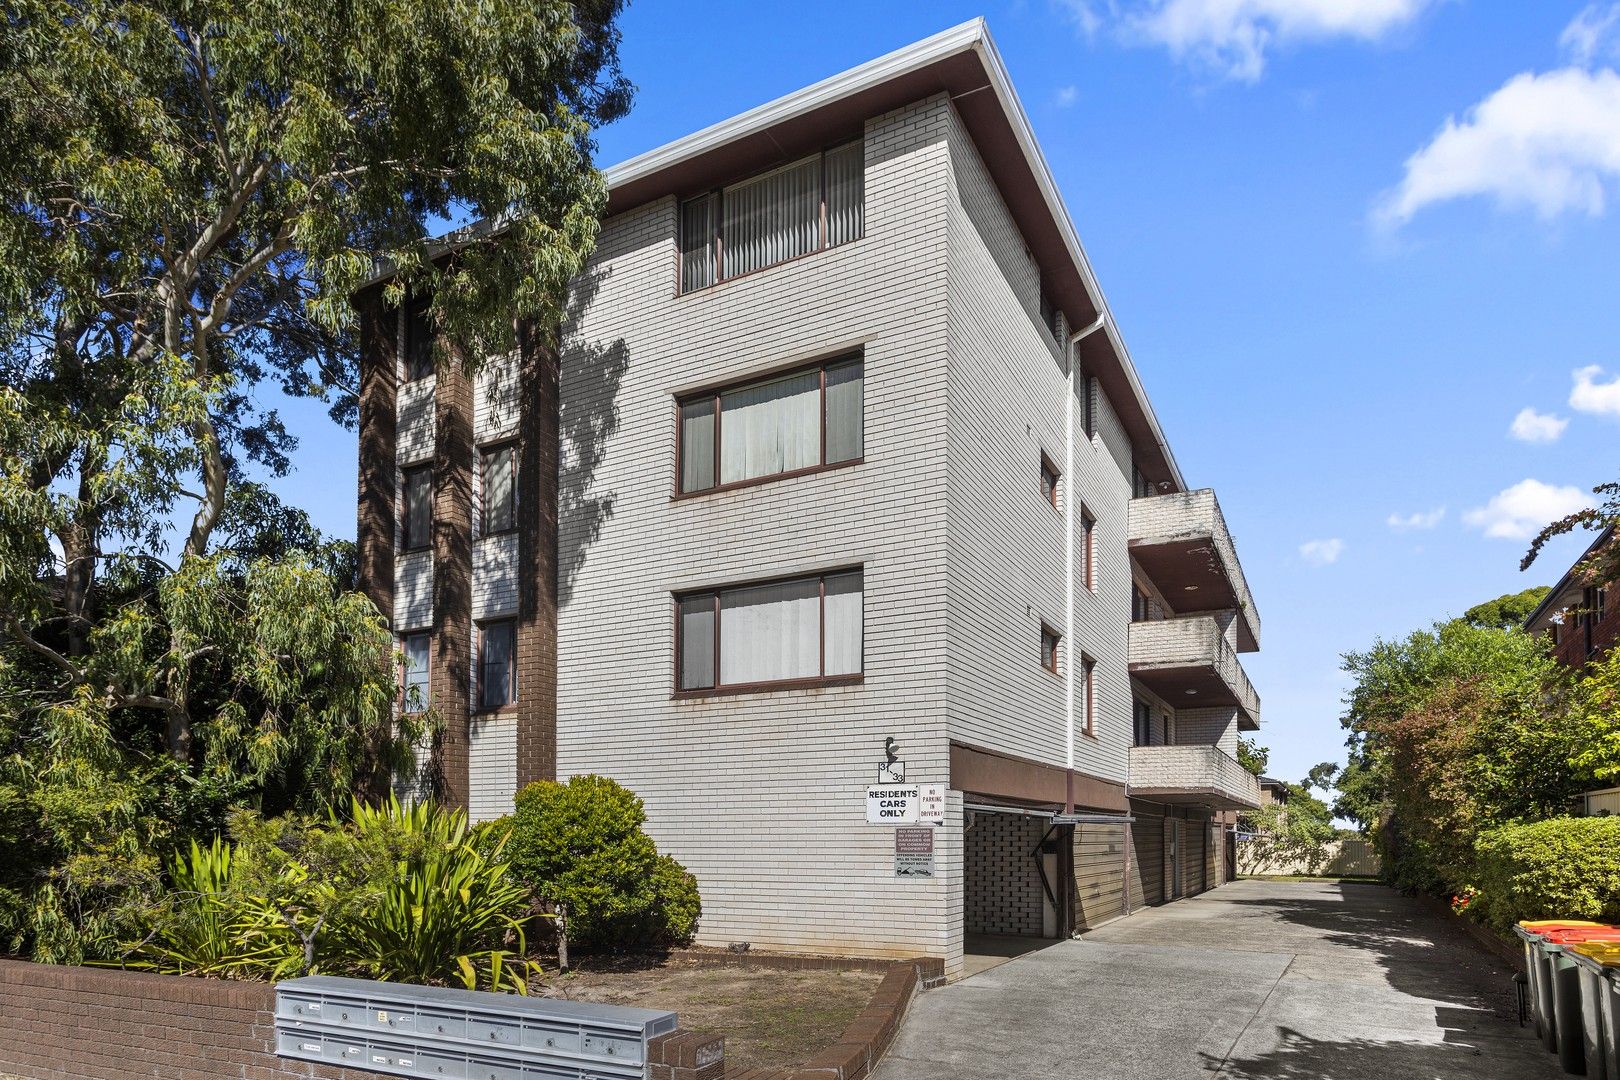 2 bedrooms Apartment / Unit / Flat in 4/31-33 Ocean Street PENSHURST NSW, 2222